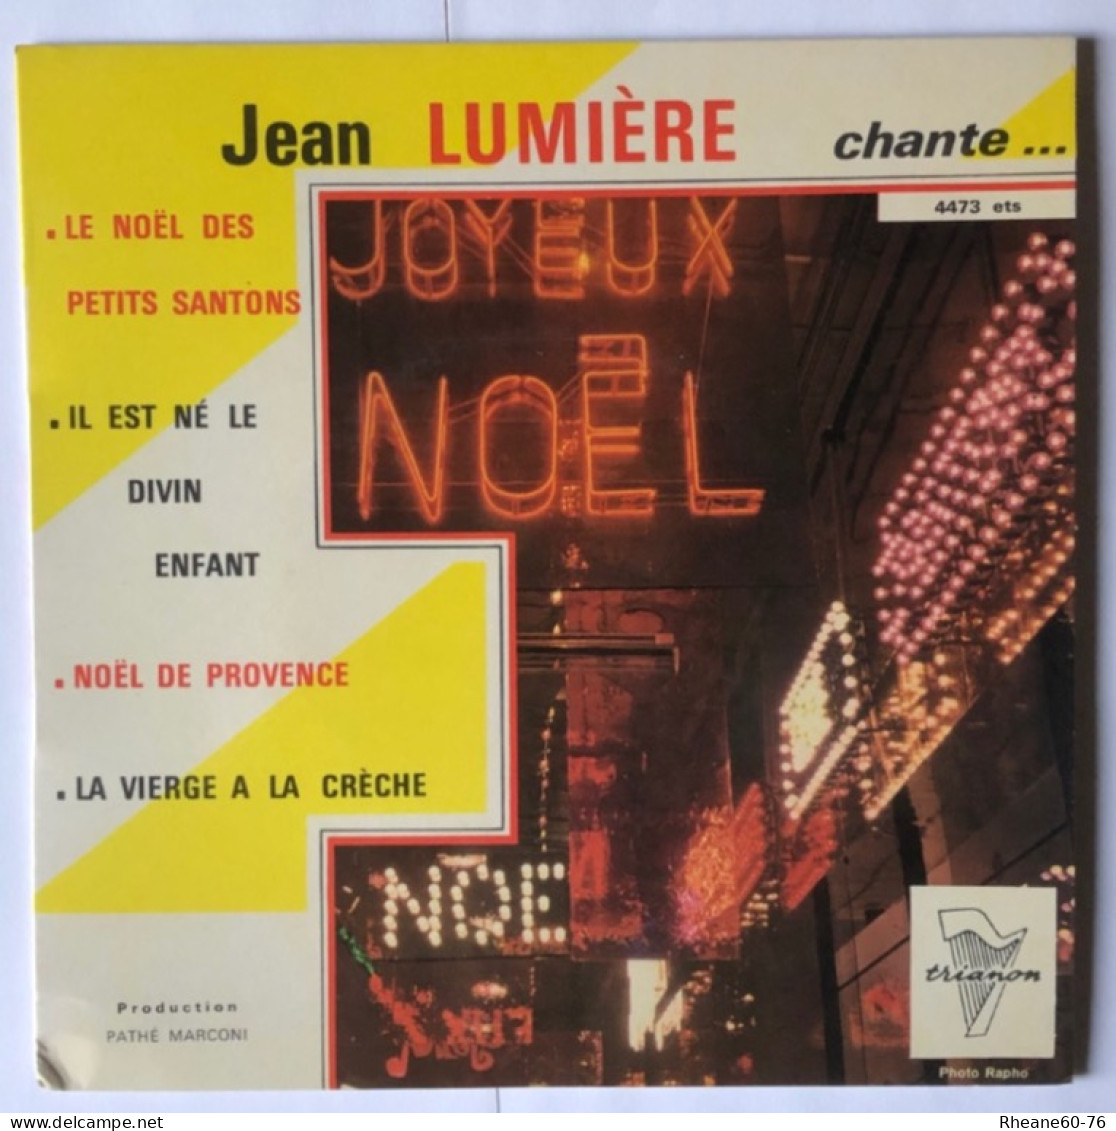 Trianon 4473 ETS - Jean Lumière Chante Noël … - Orchestre Direction Marcel Cariven - Pathé Marconi - Speciale Formaten